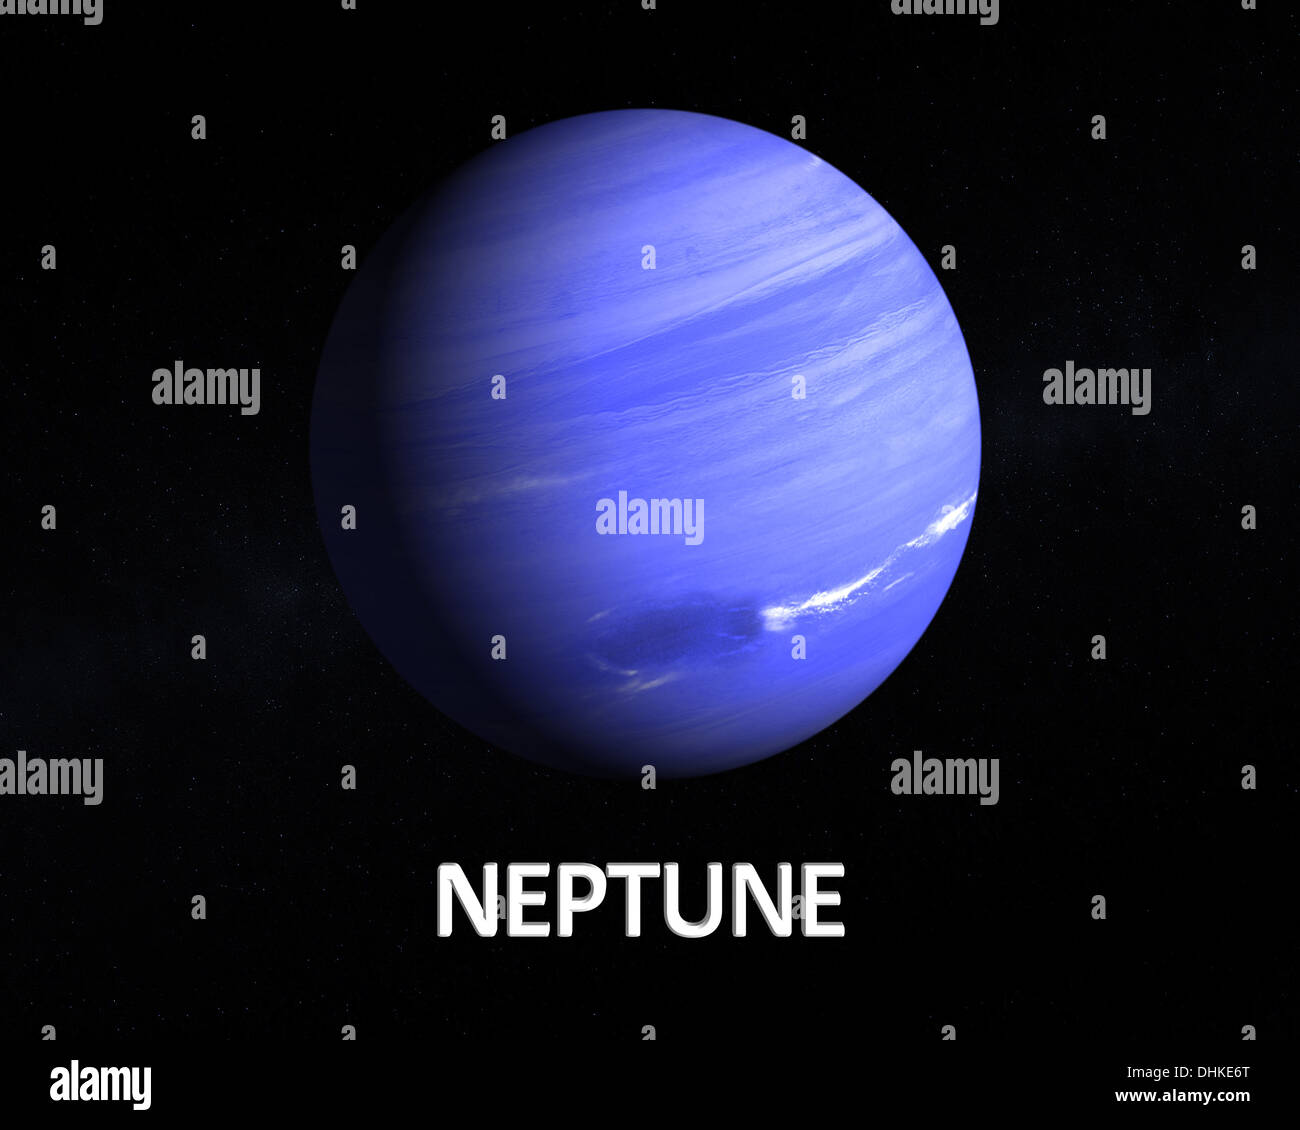 Una representación del Gas Planeta Neptuno sobre un fondo estrellado con subtítulos en inglés. Foto de stock